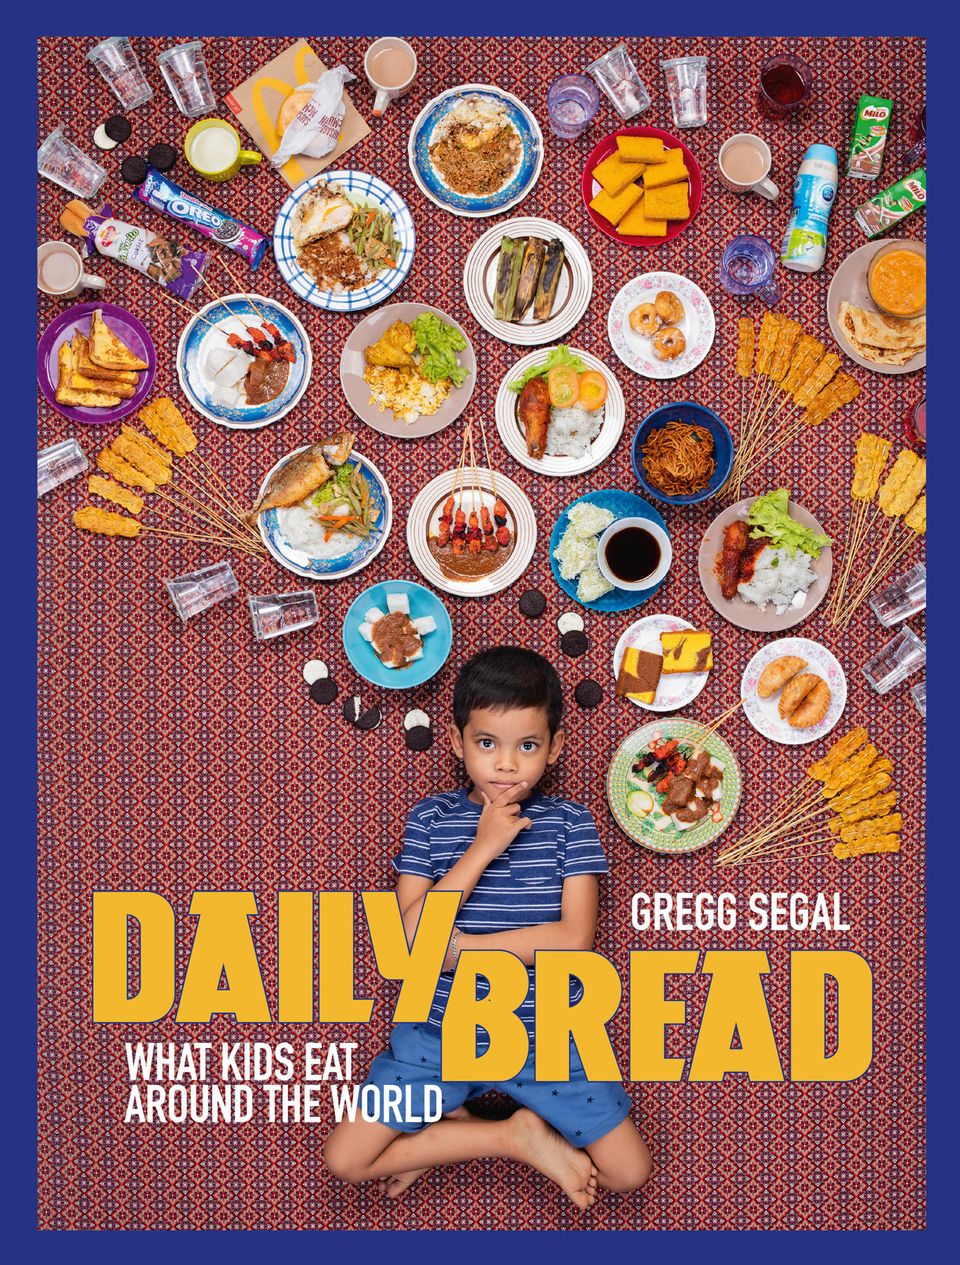 Mehr Bilder von Kinder-Essen aus aller Welt in: "Daily Bread. What Kids Eat Around The World", Erschienen bei powerHouse Books auf Englisch. 120 Seiten. Etwa 34 Euro.